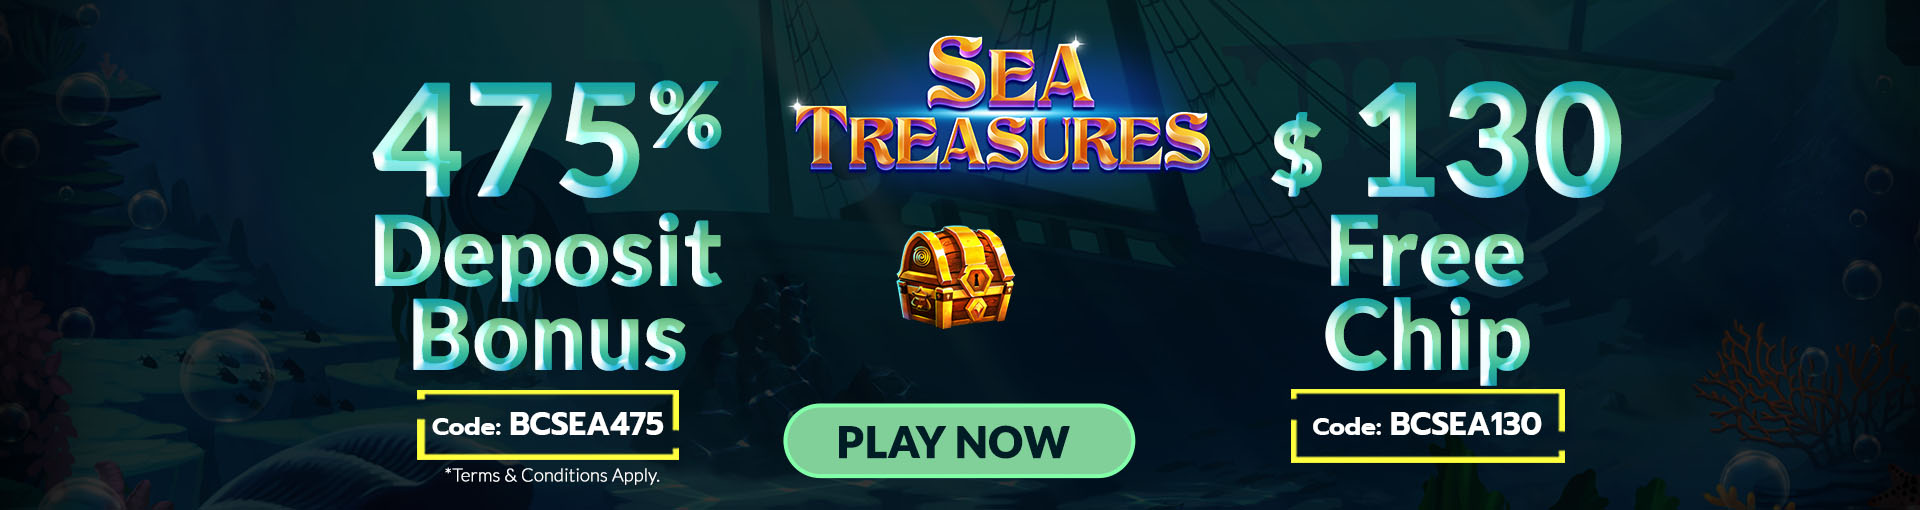 BC_sea_treasures